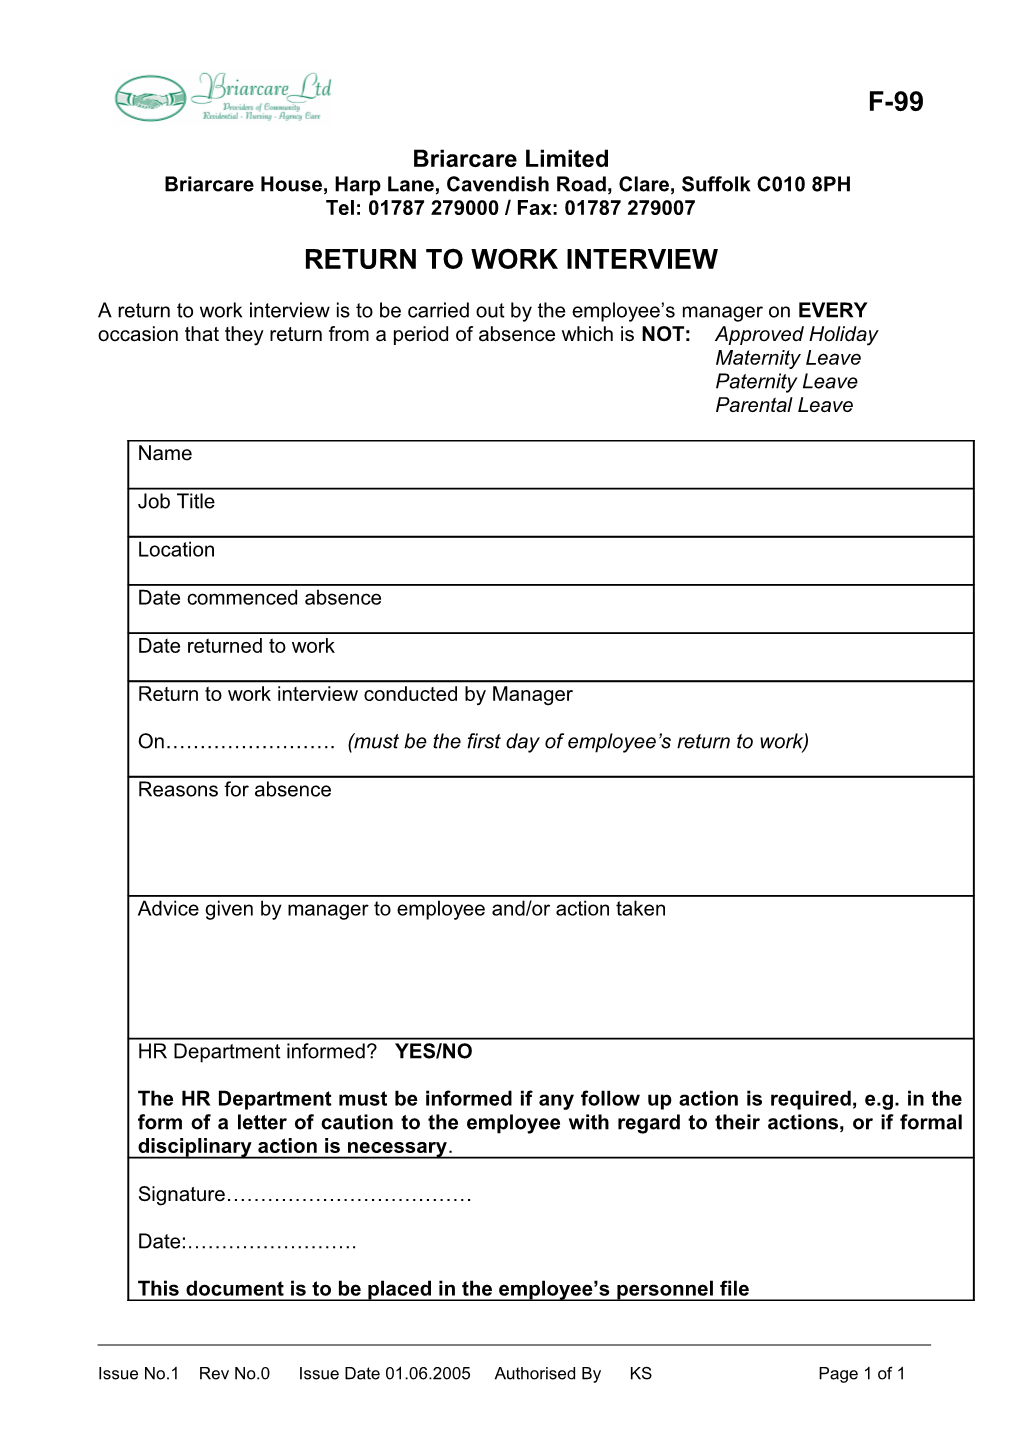 Return to Work Interview